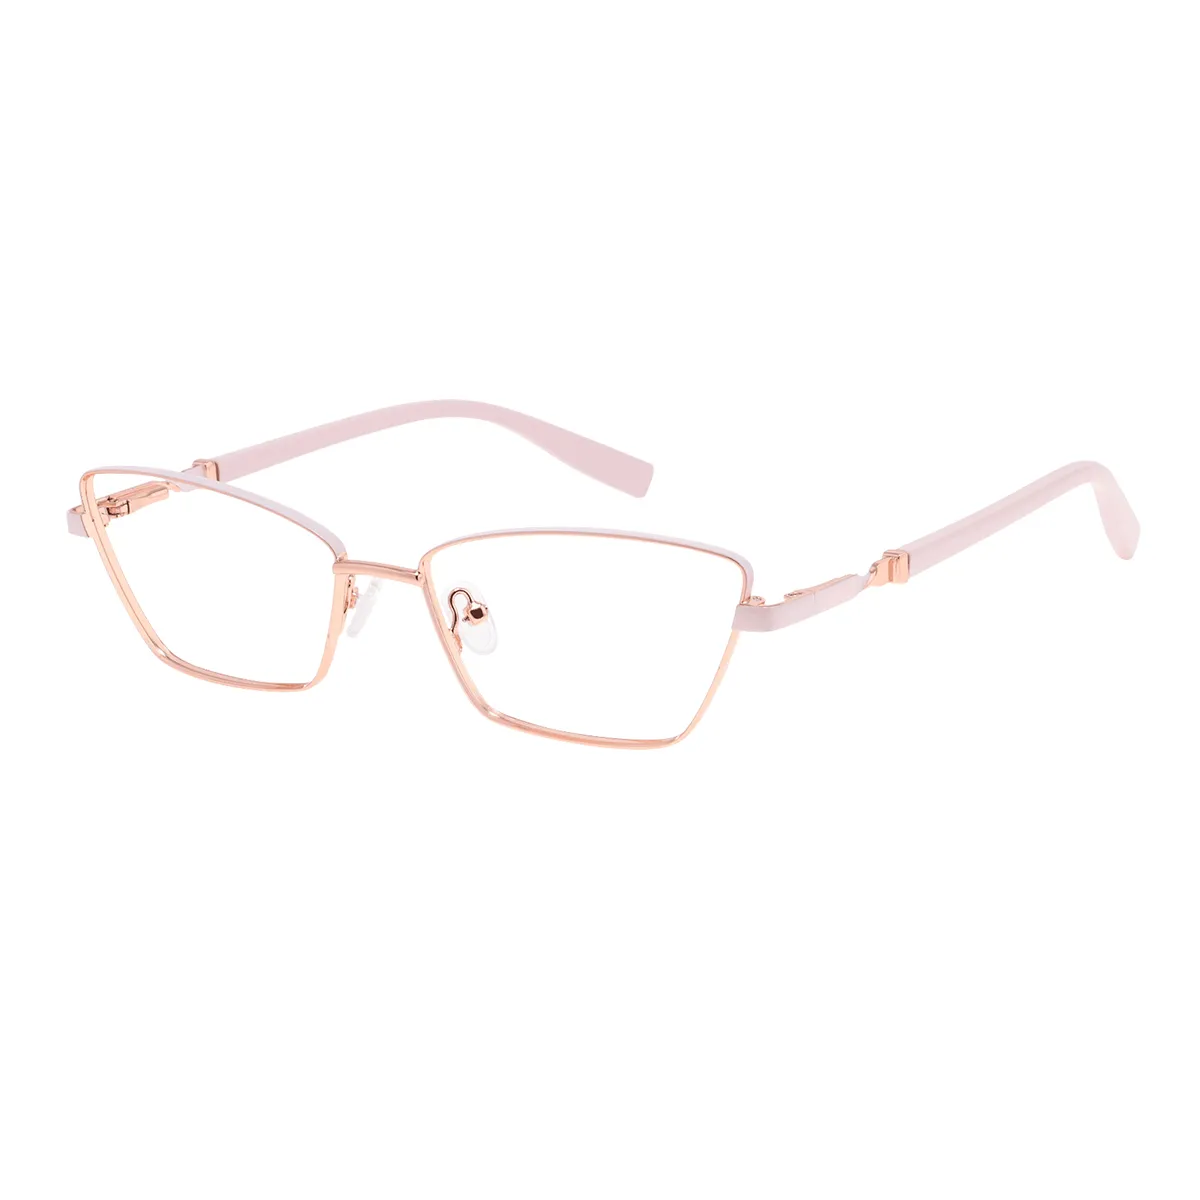 Gwenda - Cat-eye Rose-Gold Glasses for Women